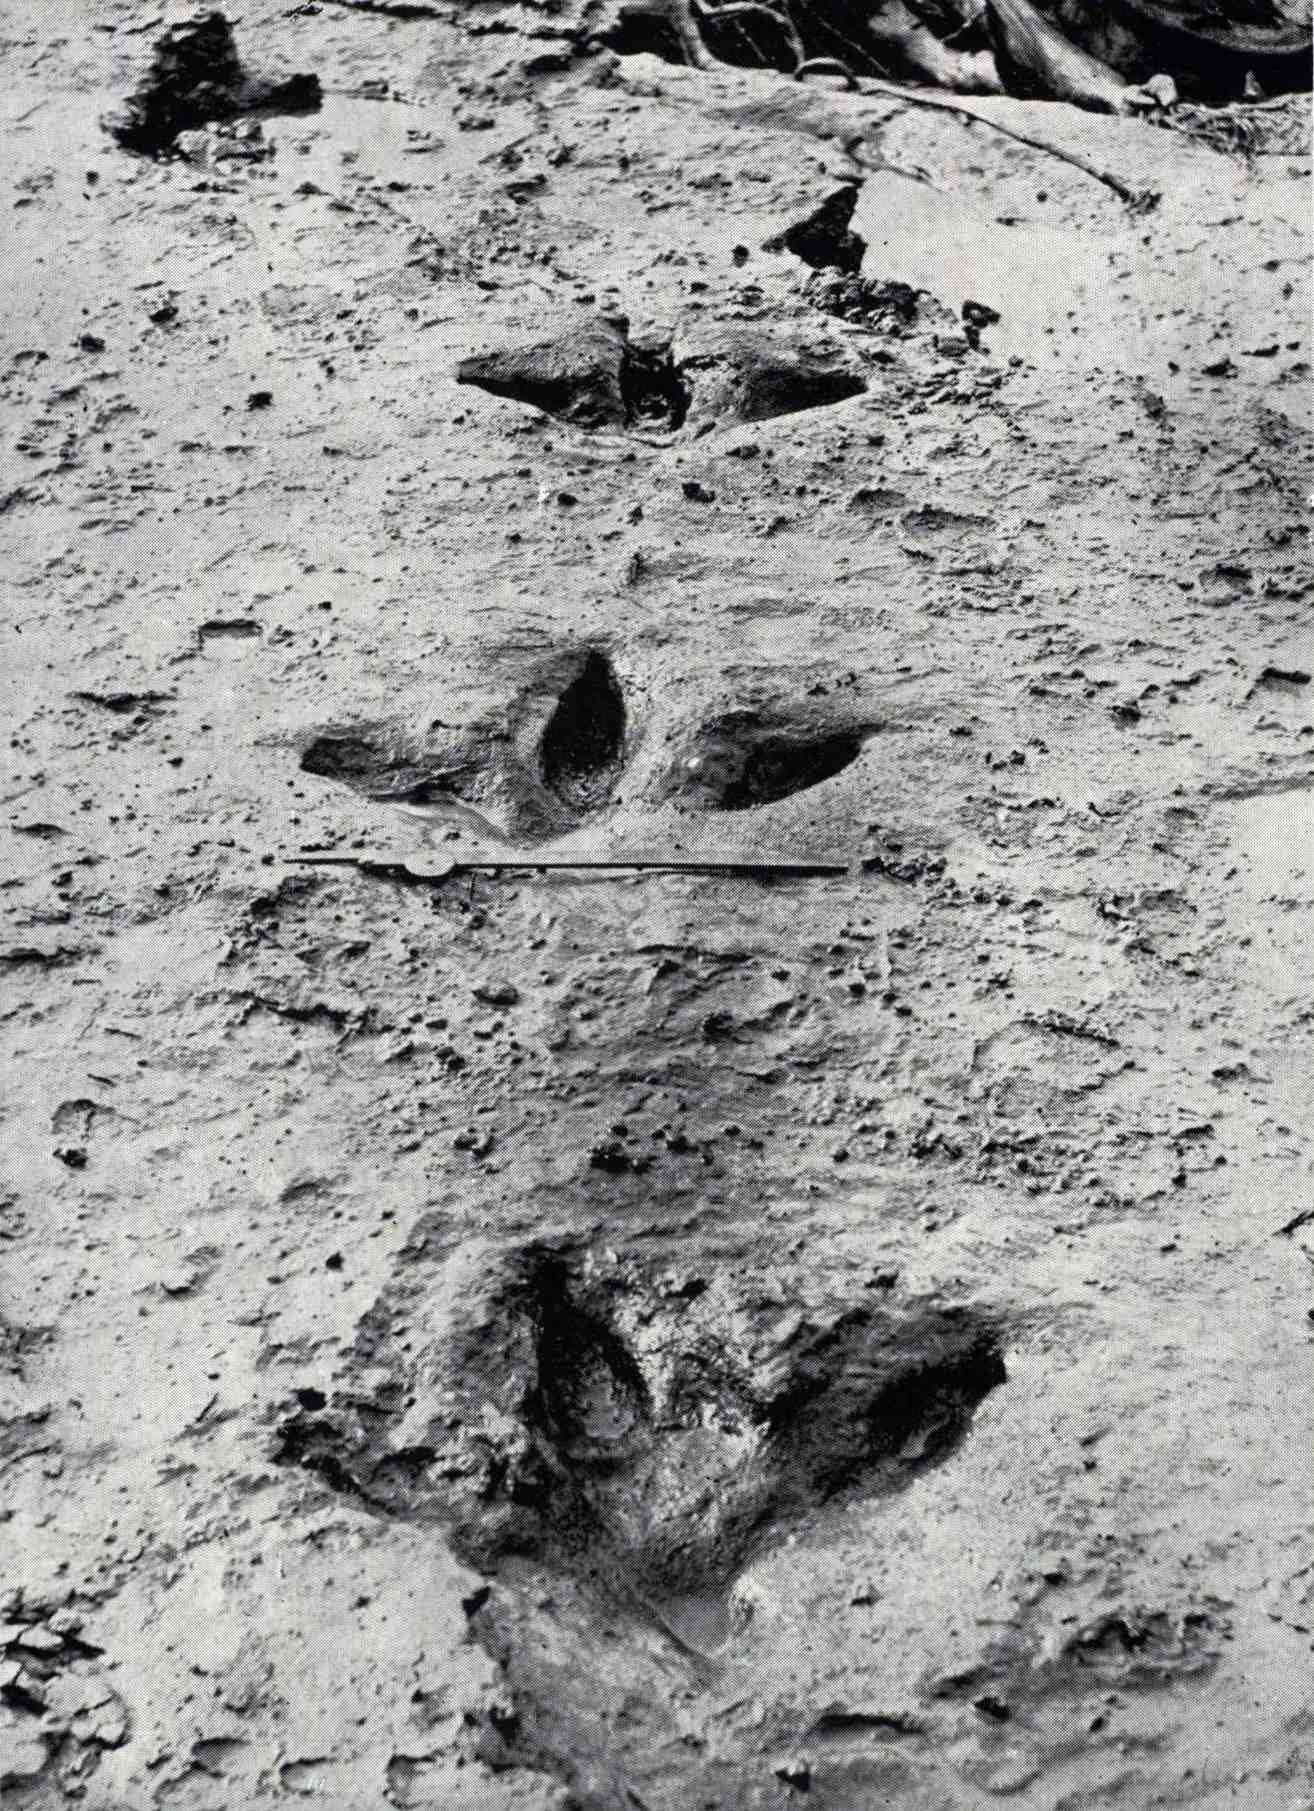 1911 年 XNUMX 月，当 Manawatū 河的洪水冲走覆盖并保存它们的蓝色粘土时，这些 Dinornis robustus 的脚印暴露出来。 他们表明恐鸟有三个强壮的前趾，并且与大多数其他平胸鸟不同，还有一个小的后脚趾。